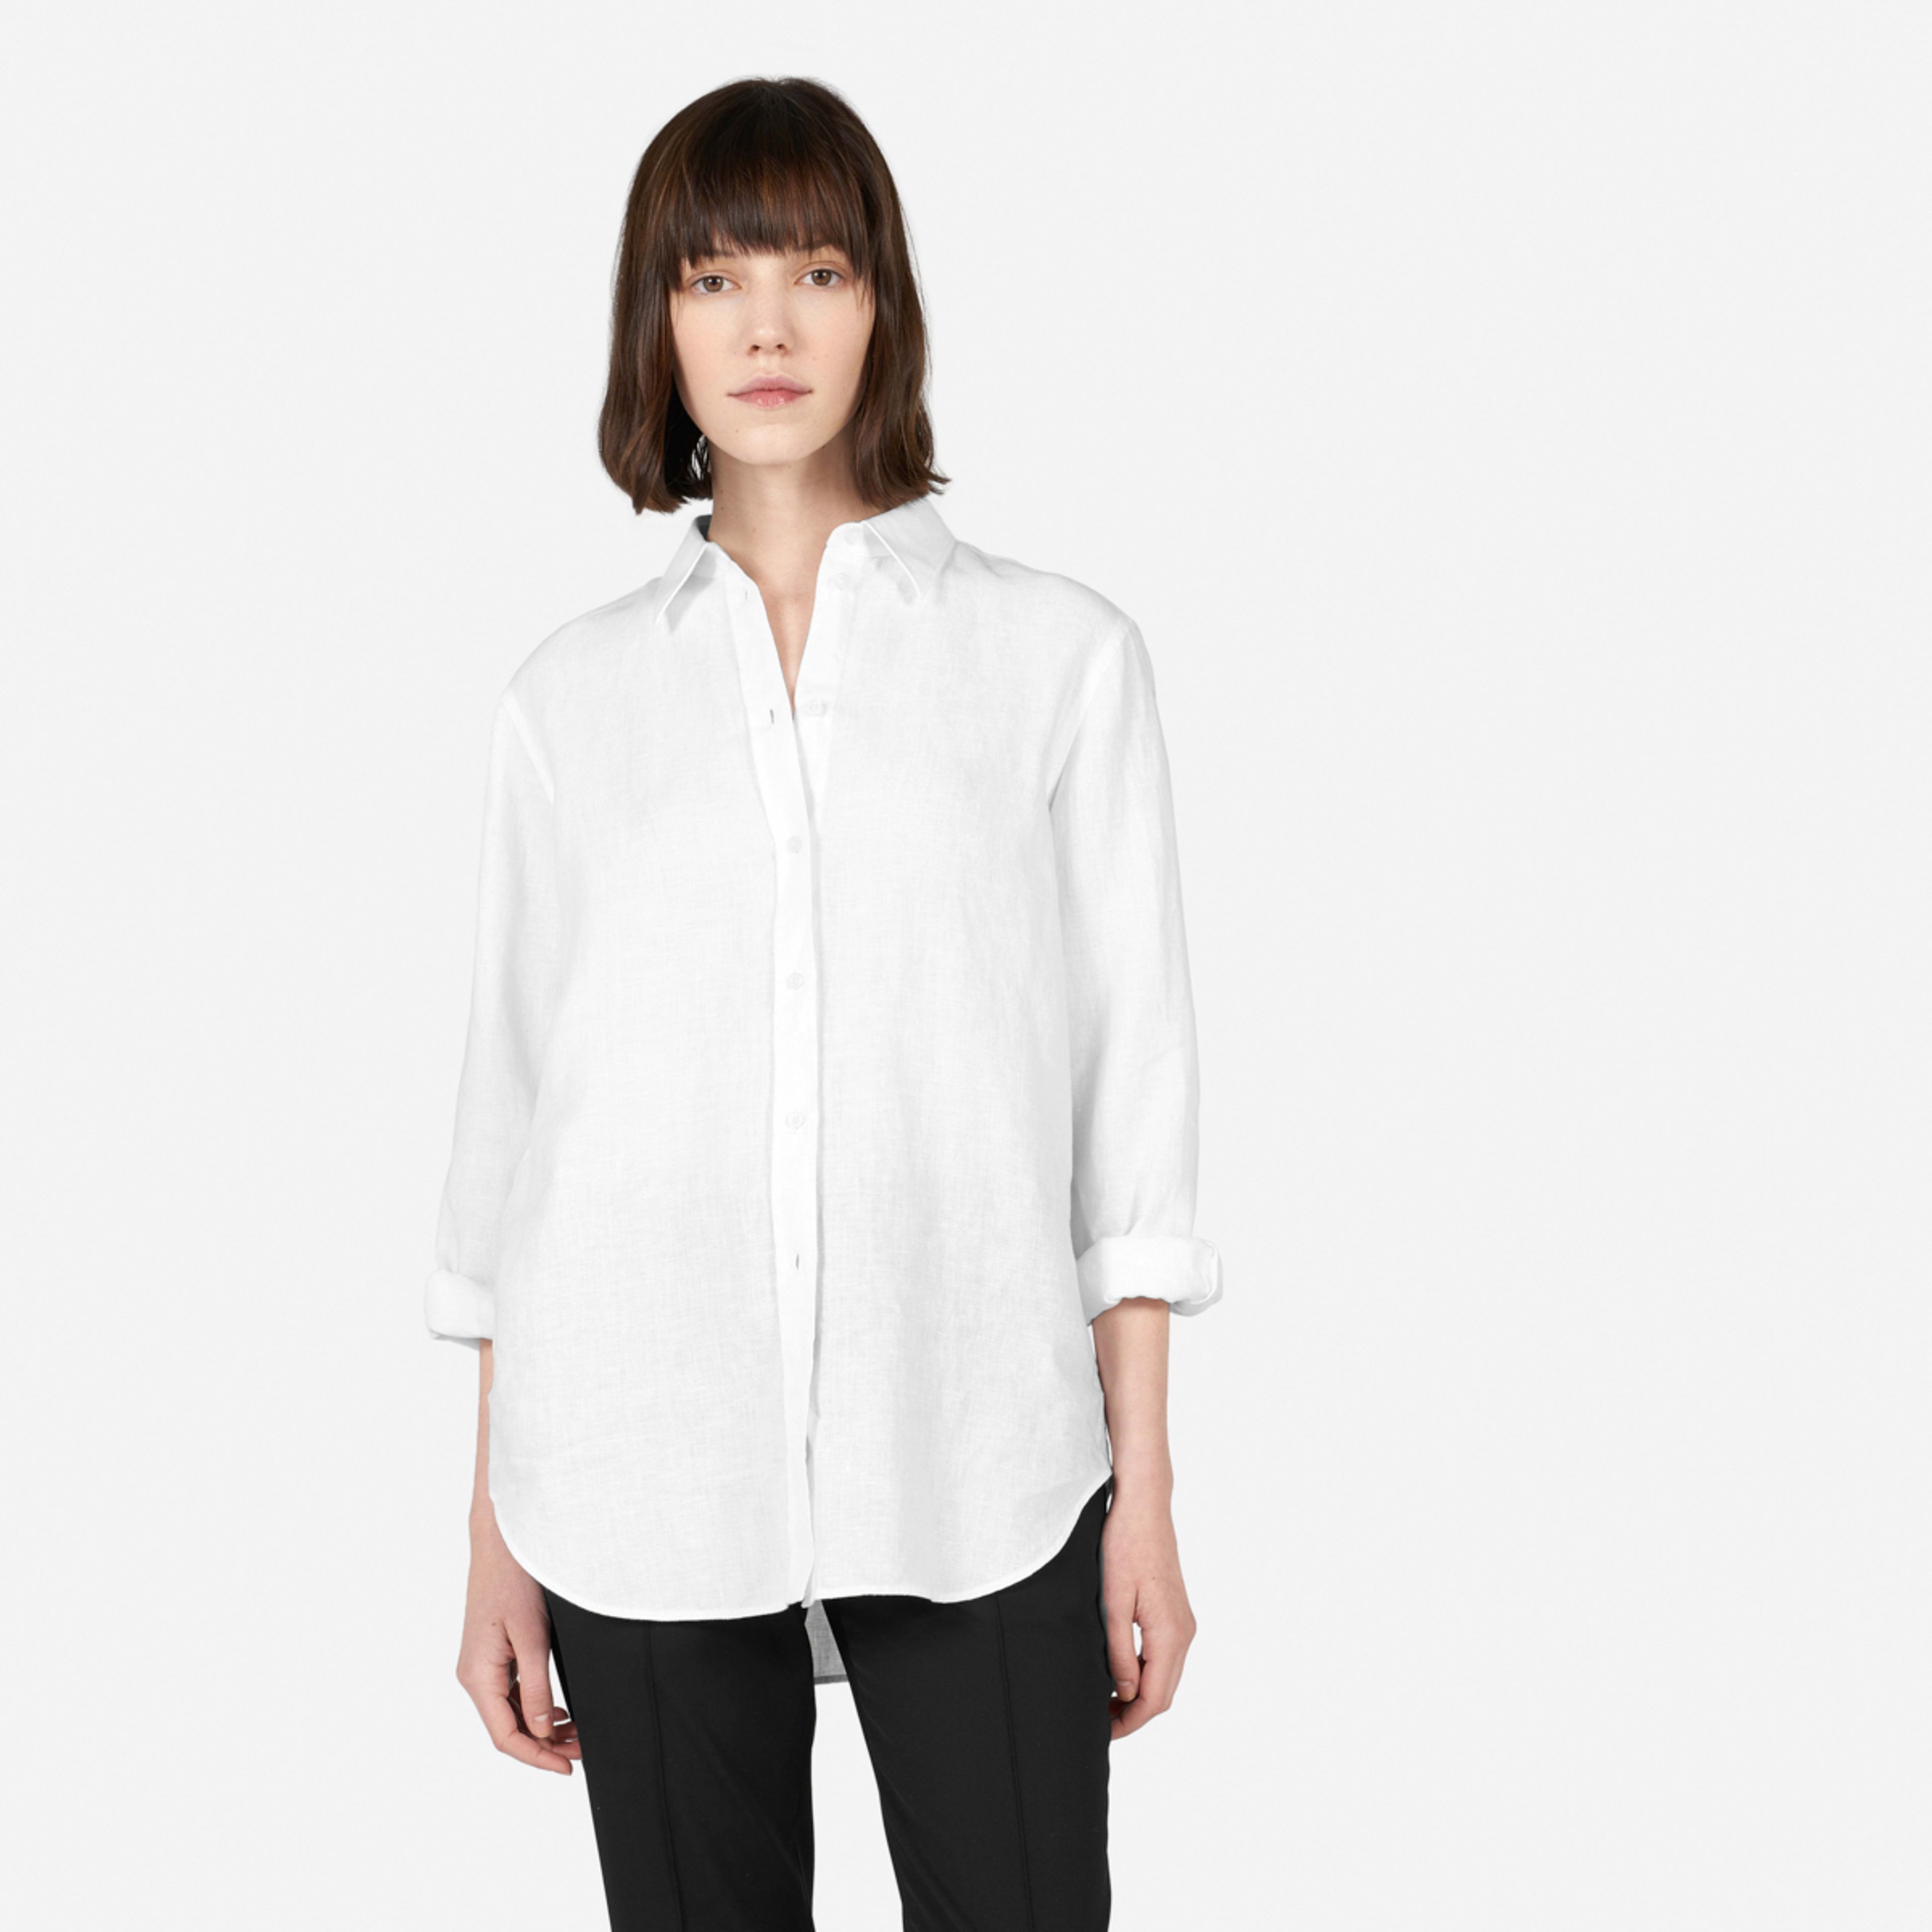 Selling fast!WomenTops, Blouses & ShirtsThe Linen Relaxed Shirt$80460 Reviewsor 4 interest-free i... | Everlane